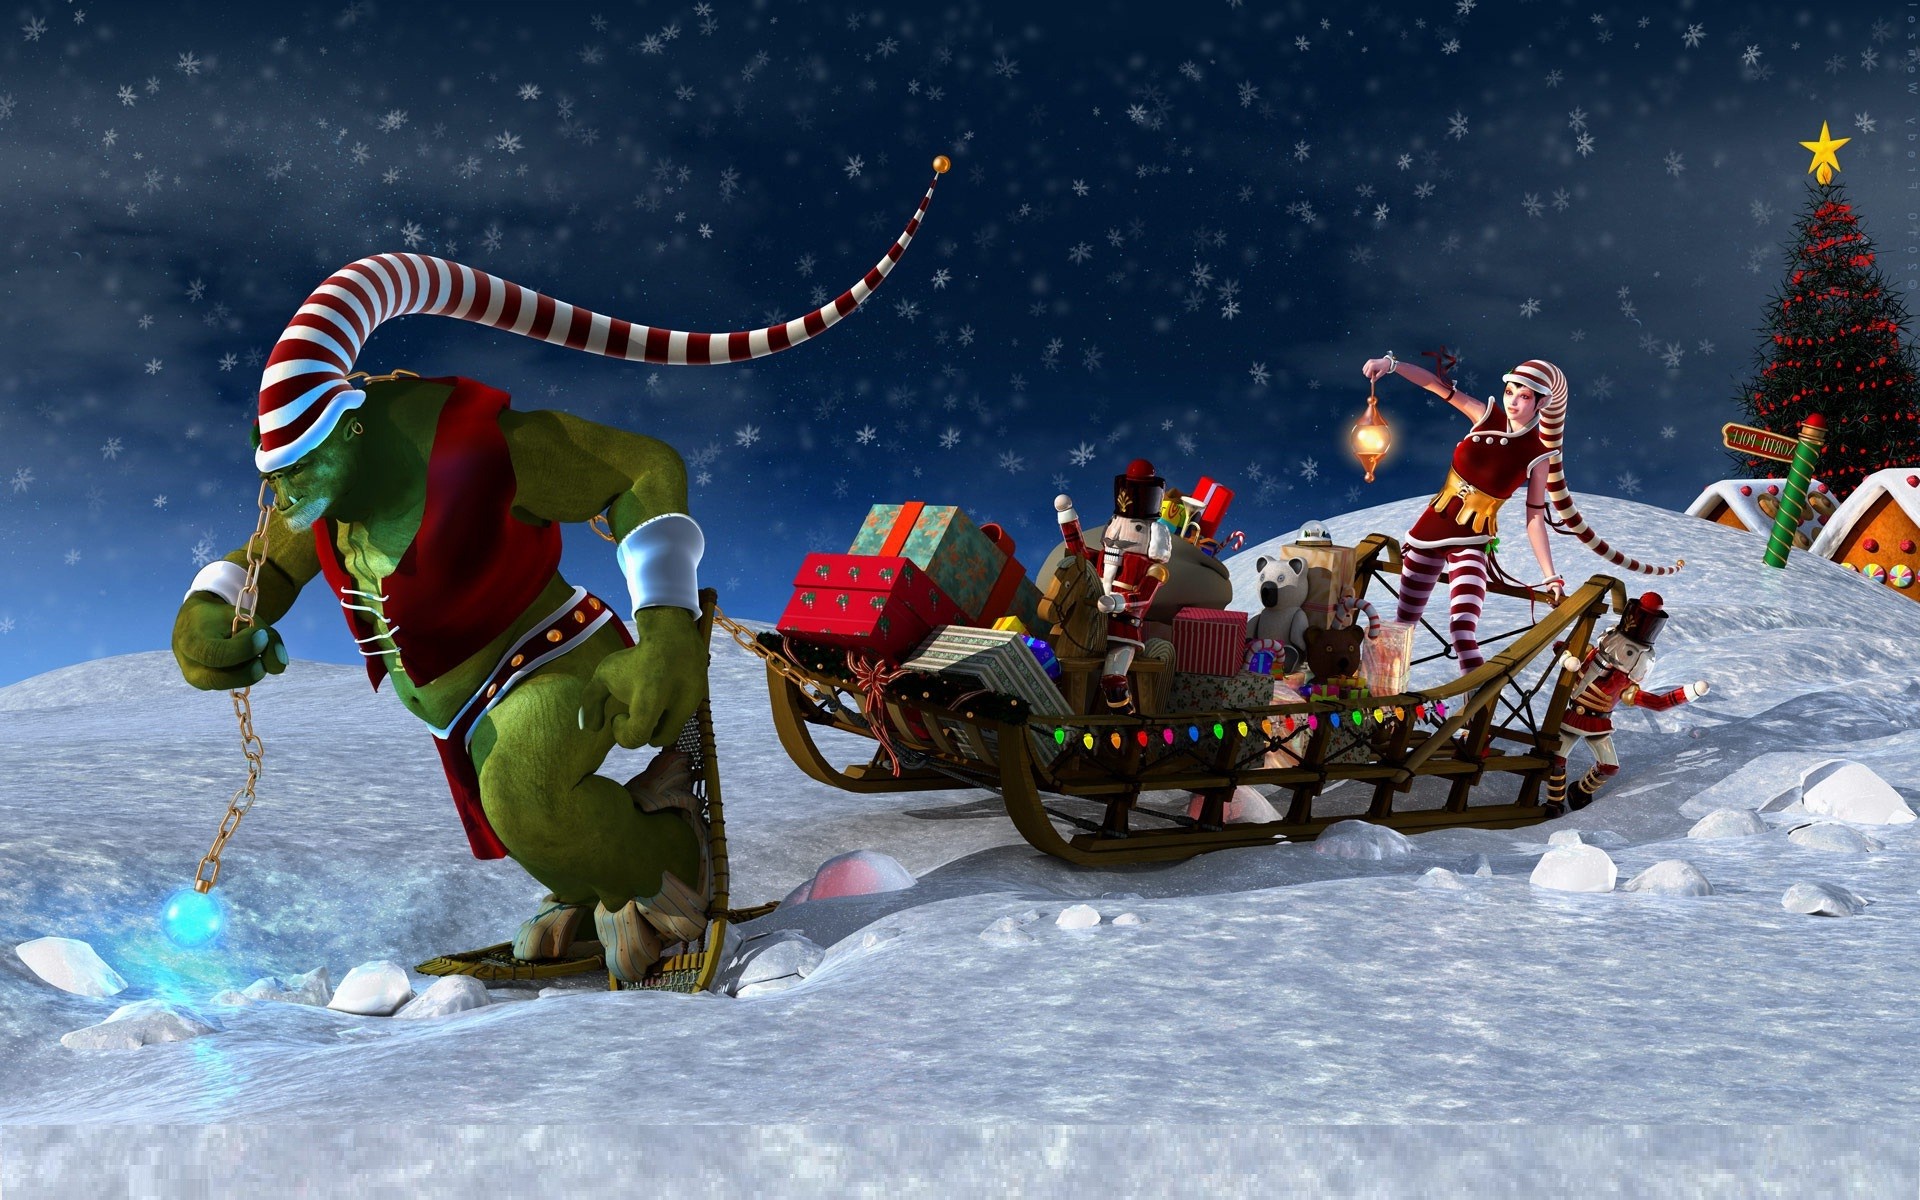 Animated Christmas Background For Desktop E1409481547111 Jpg